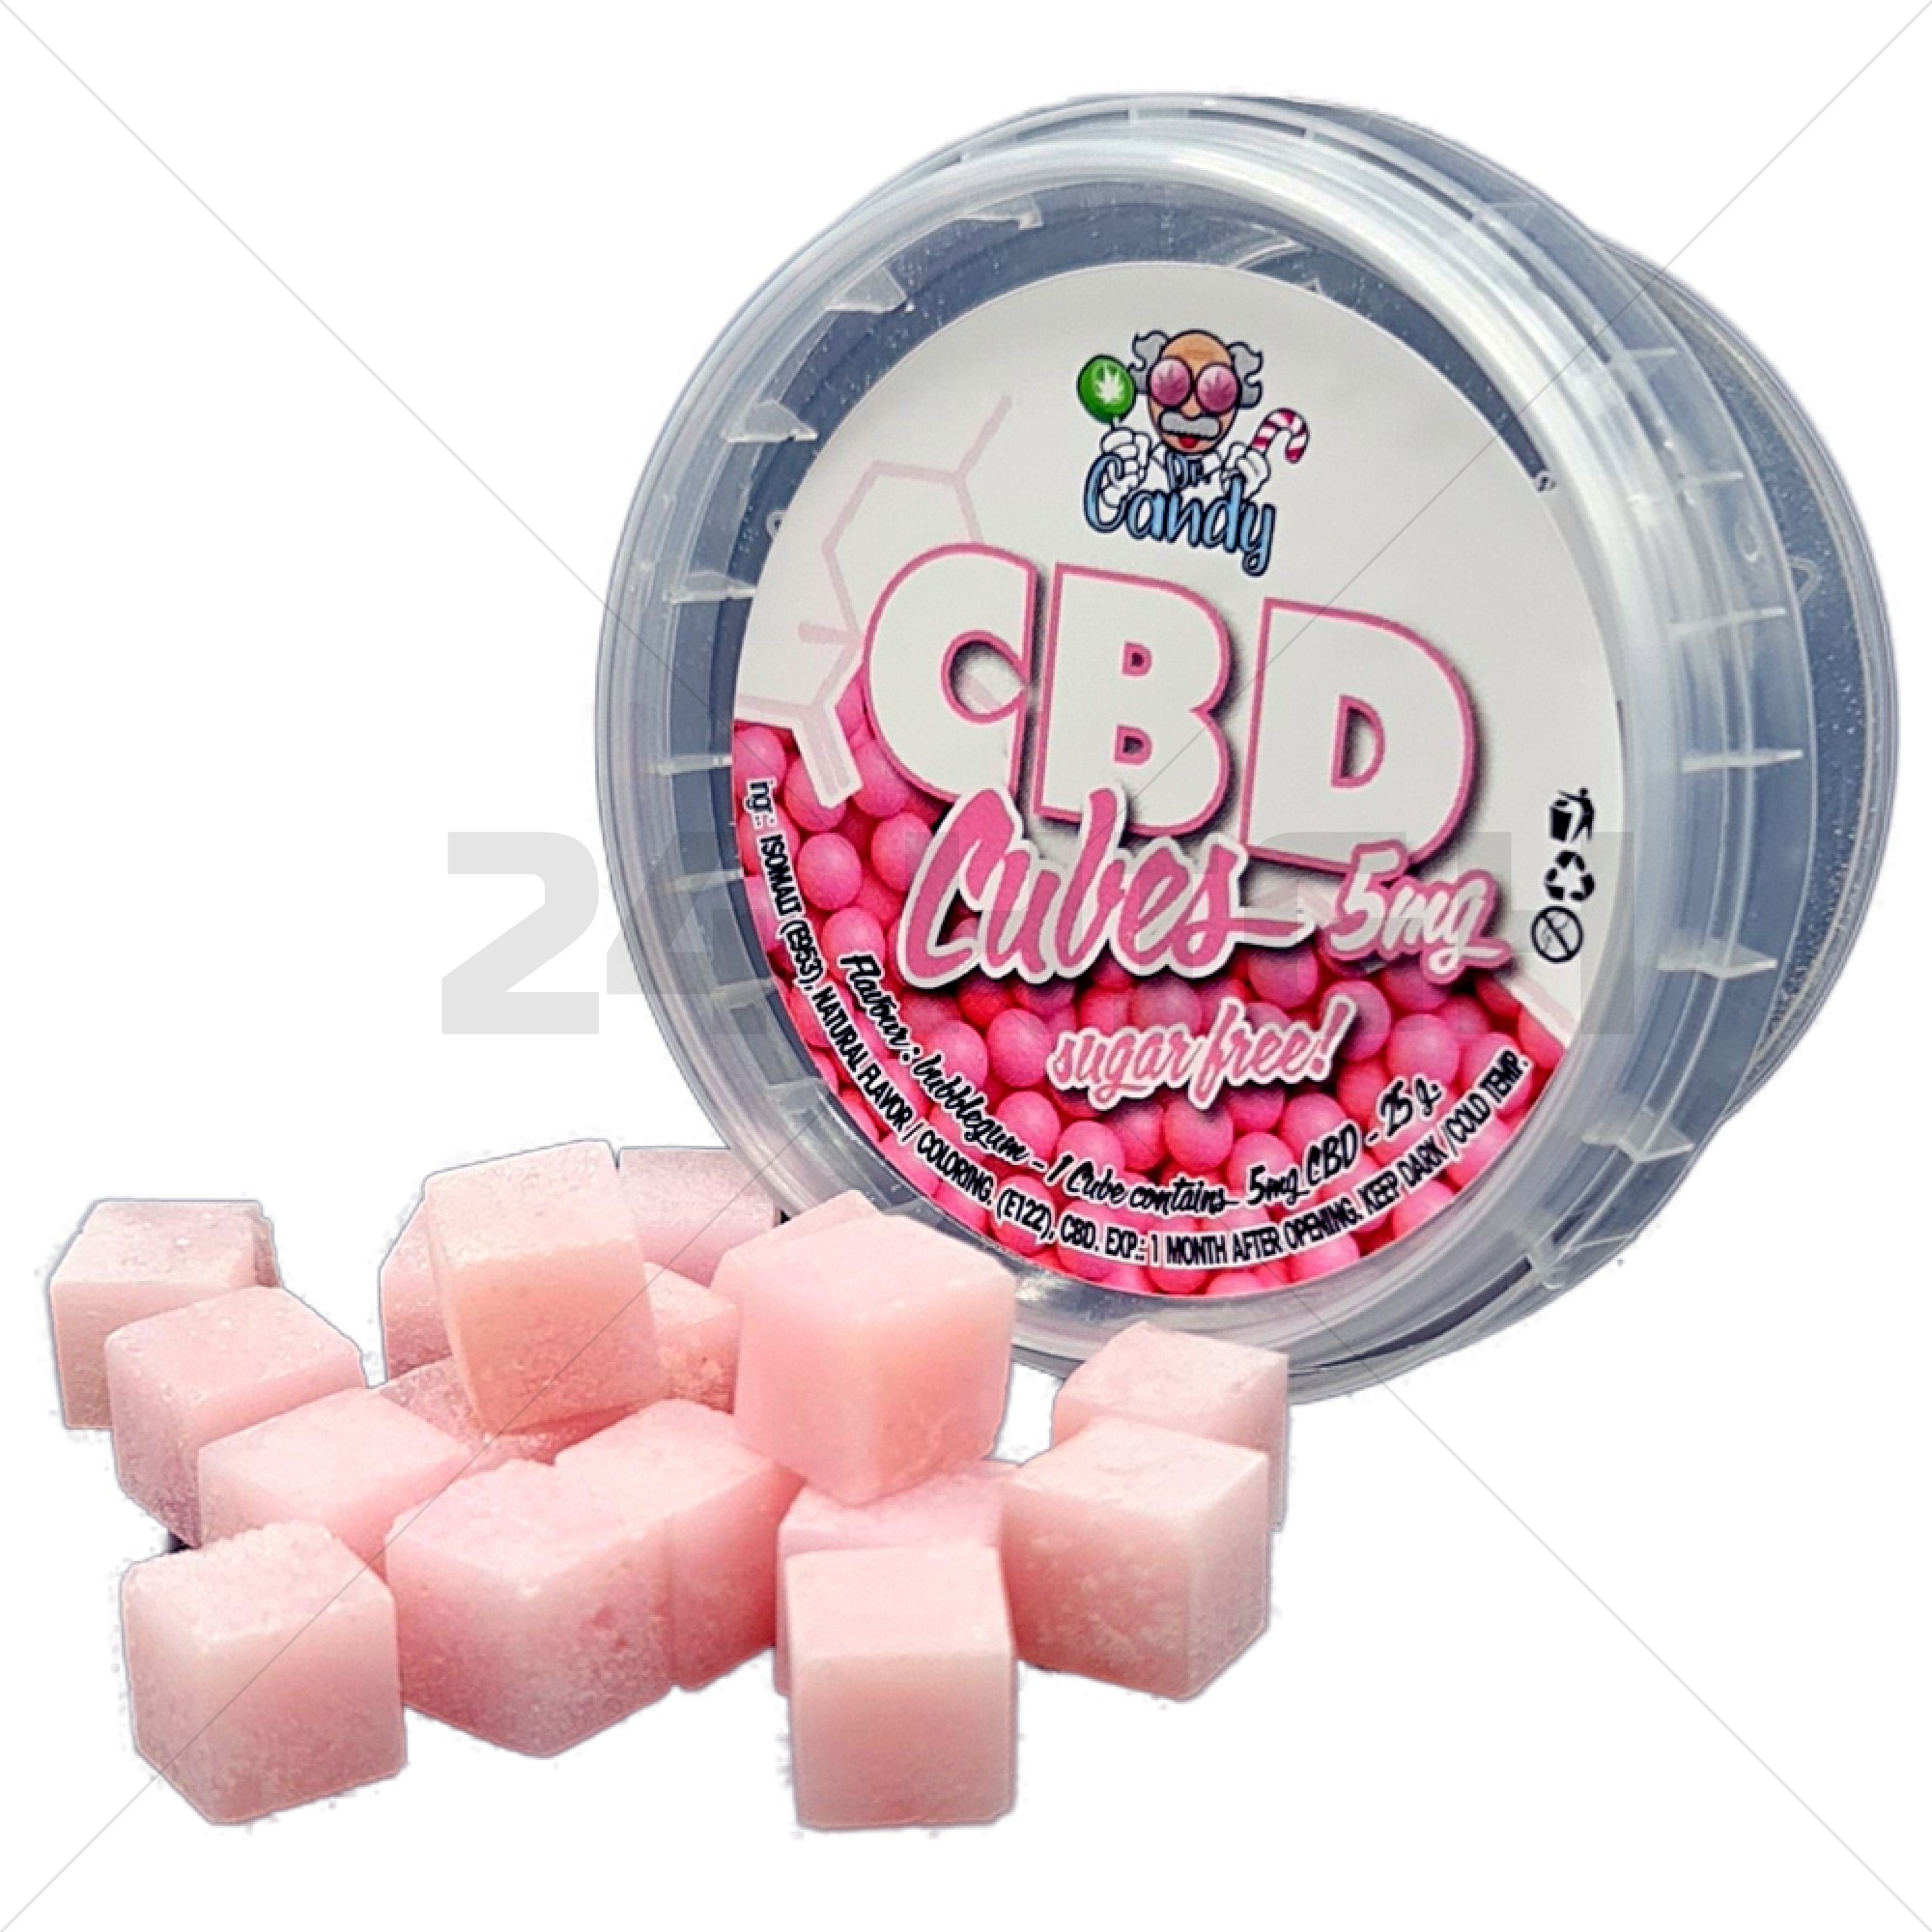 Cubos de CBD - Bubblegum